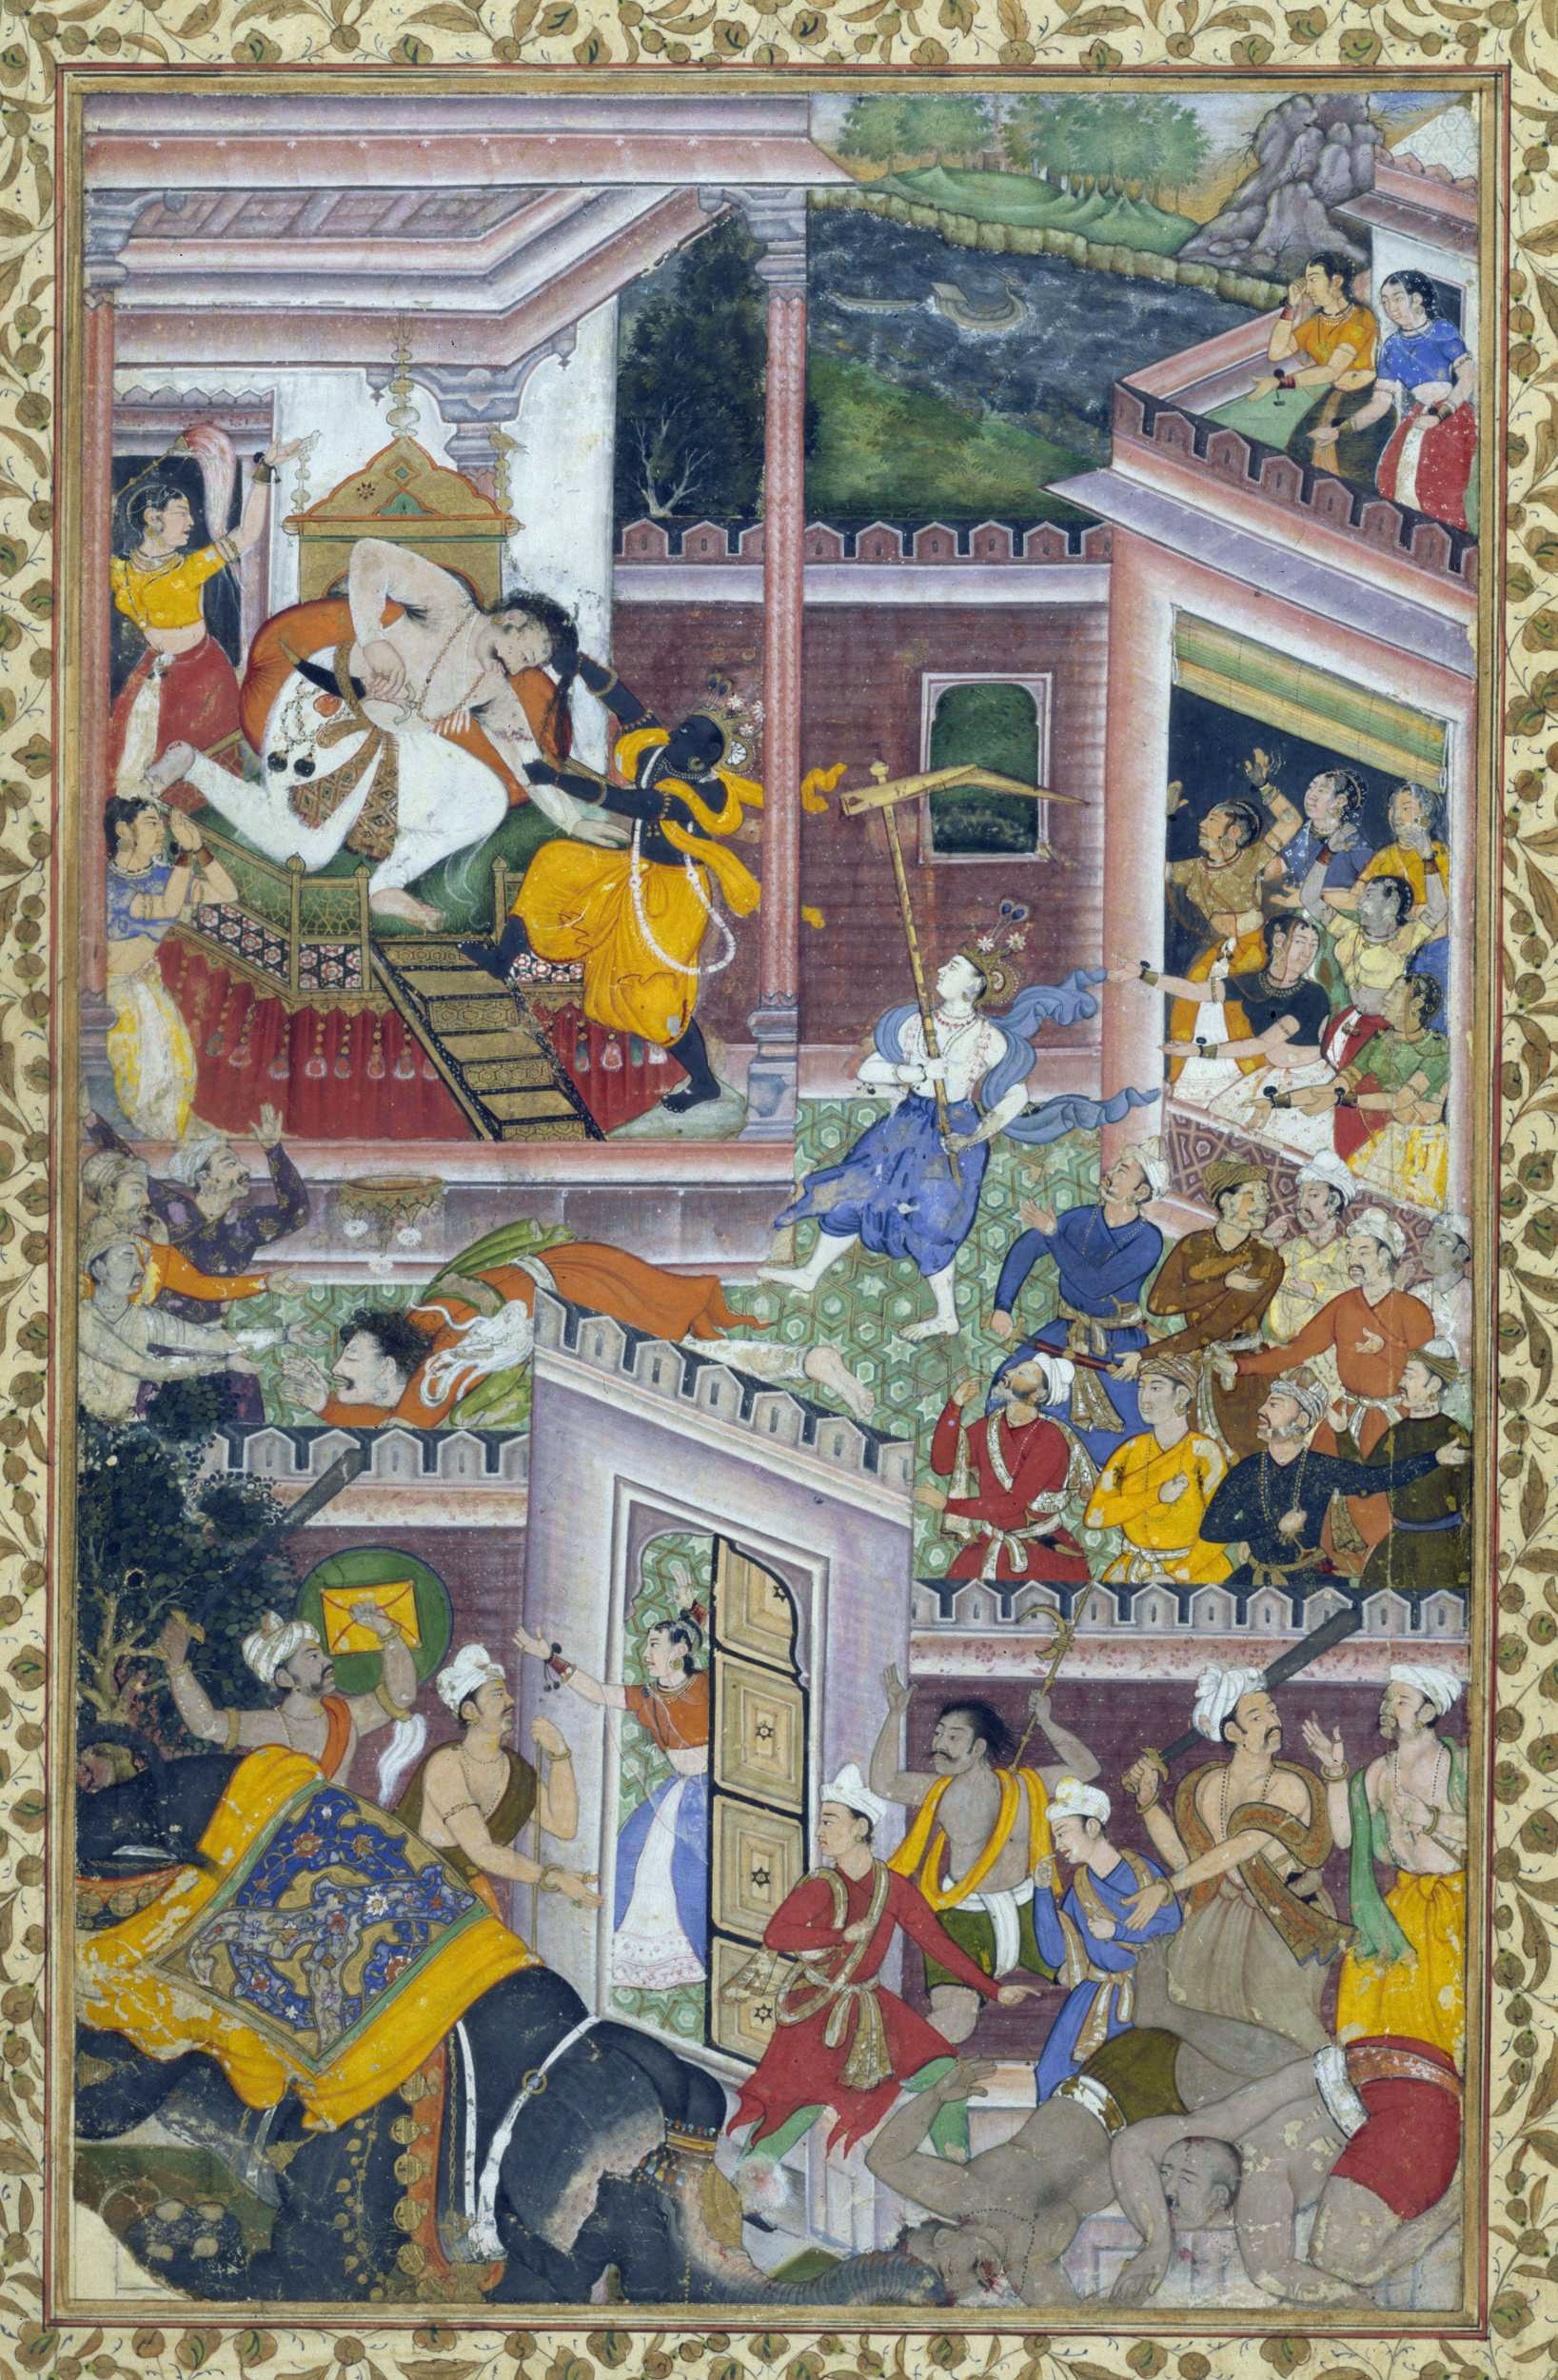 Krishna killing evil King Kansa